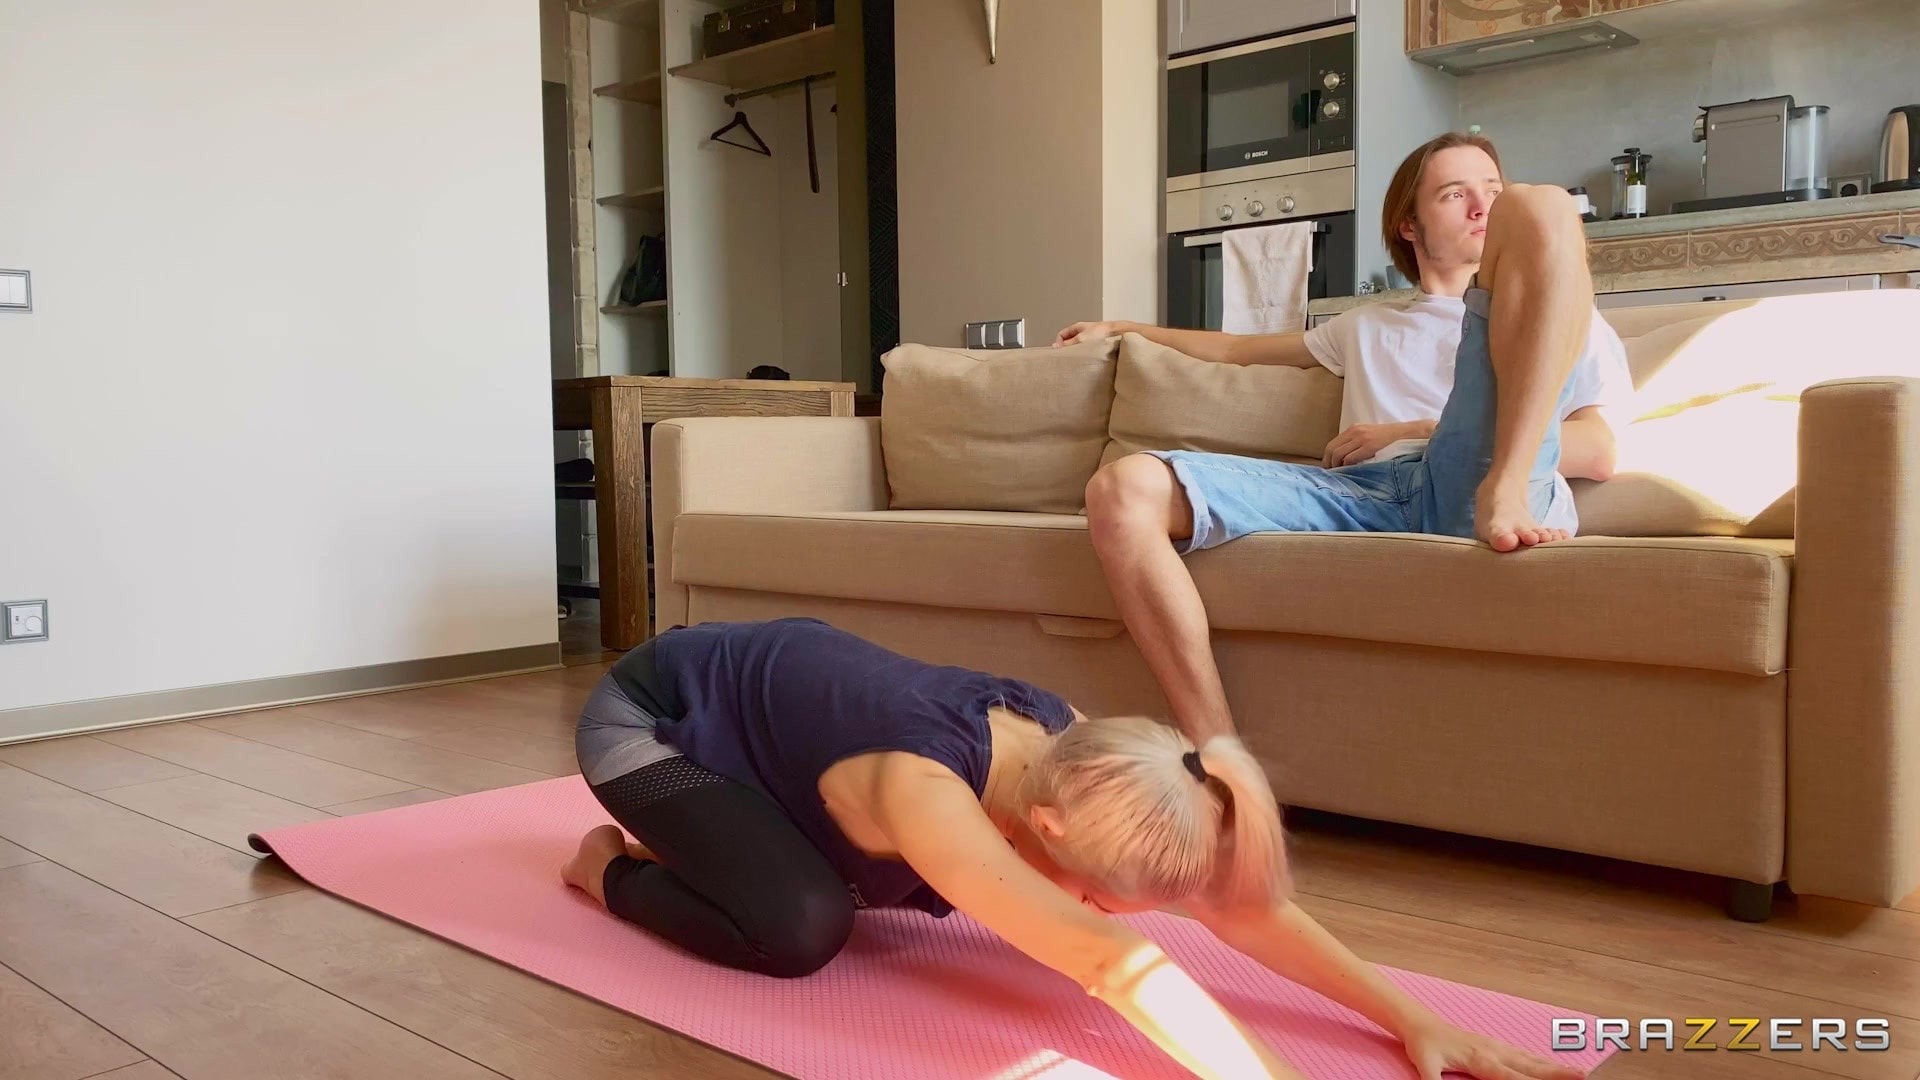 Brazzers 'Downblouse Yoga With Eva' starring Eva Elfie (Photo 2)